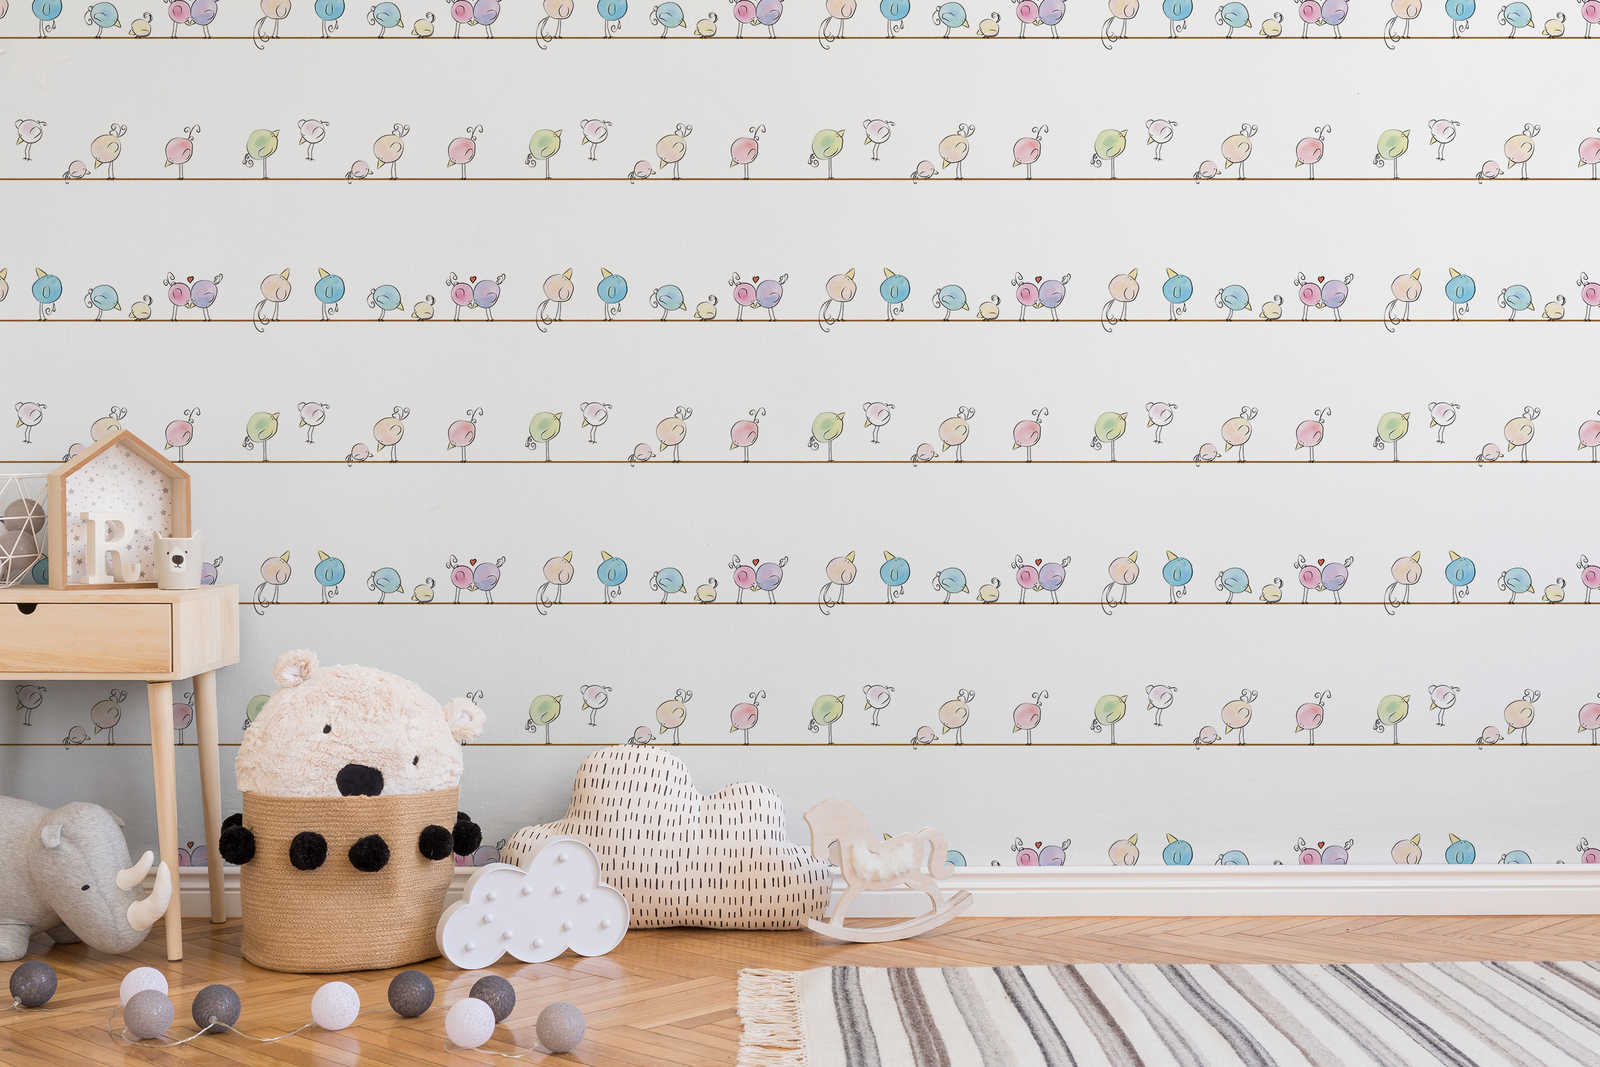             Papel pintado de habitación infantil acuarela y pájaros - colorido, blanco, azul
        